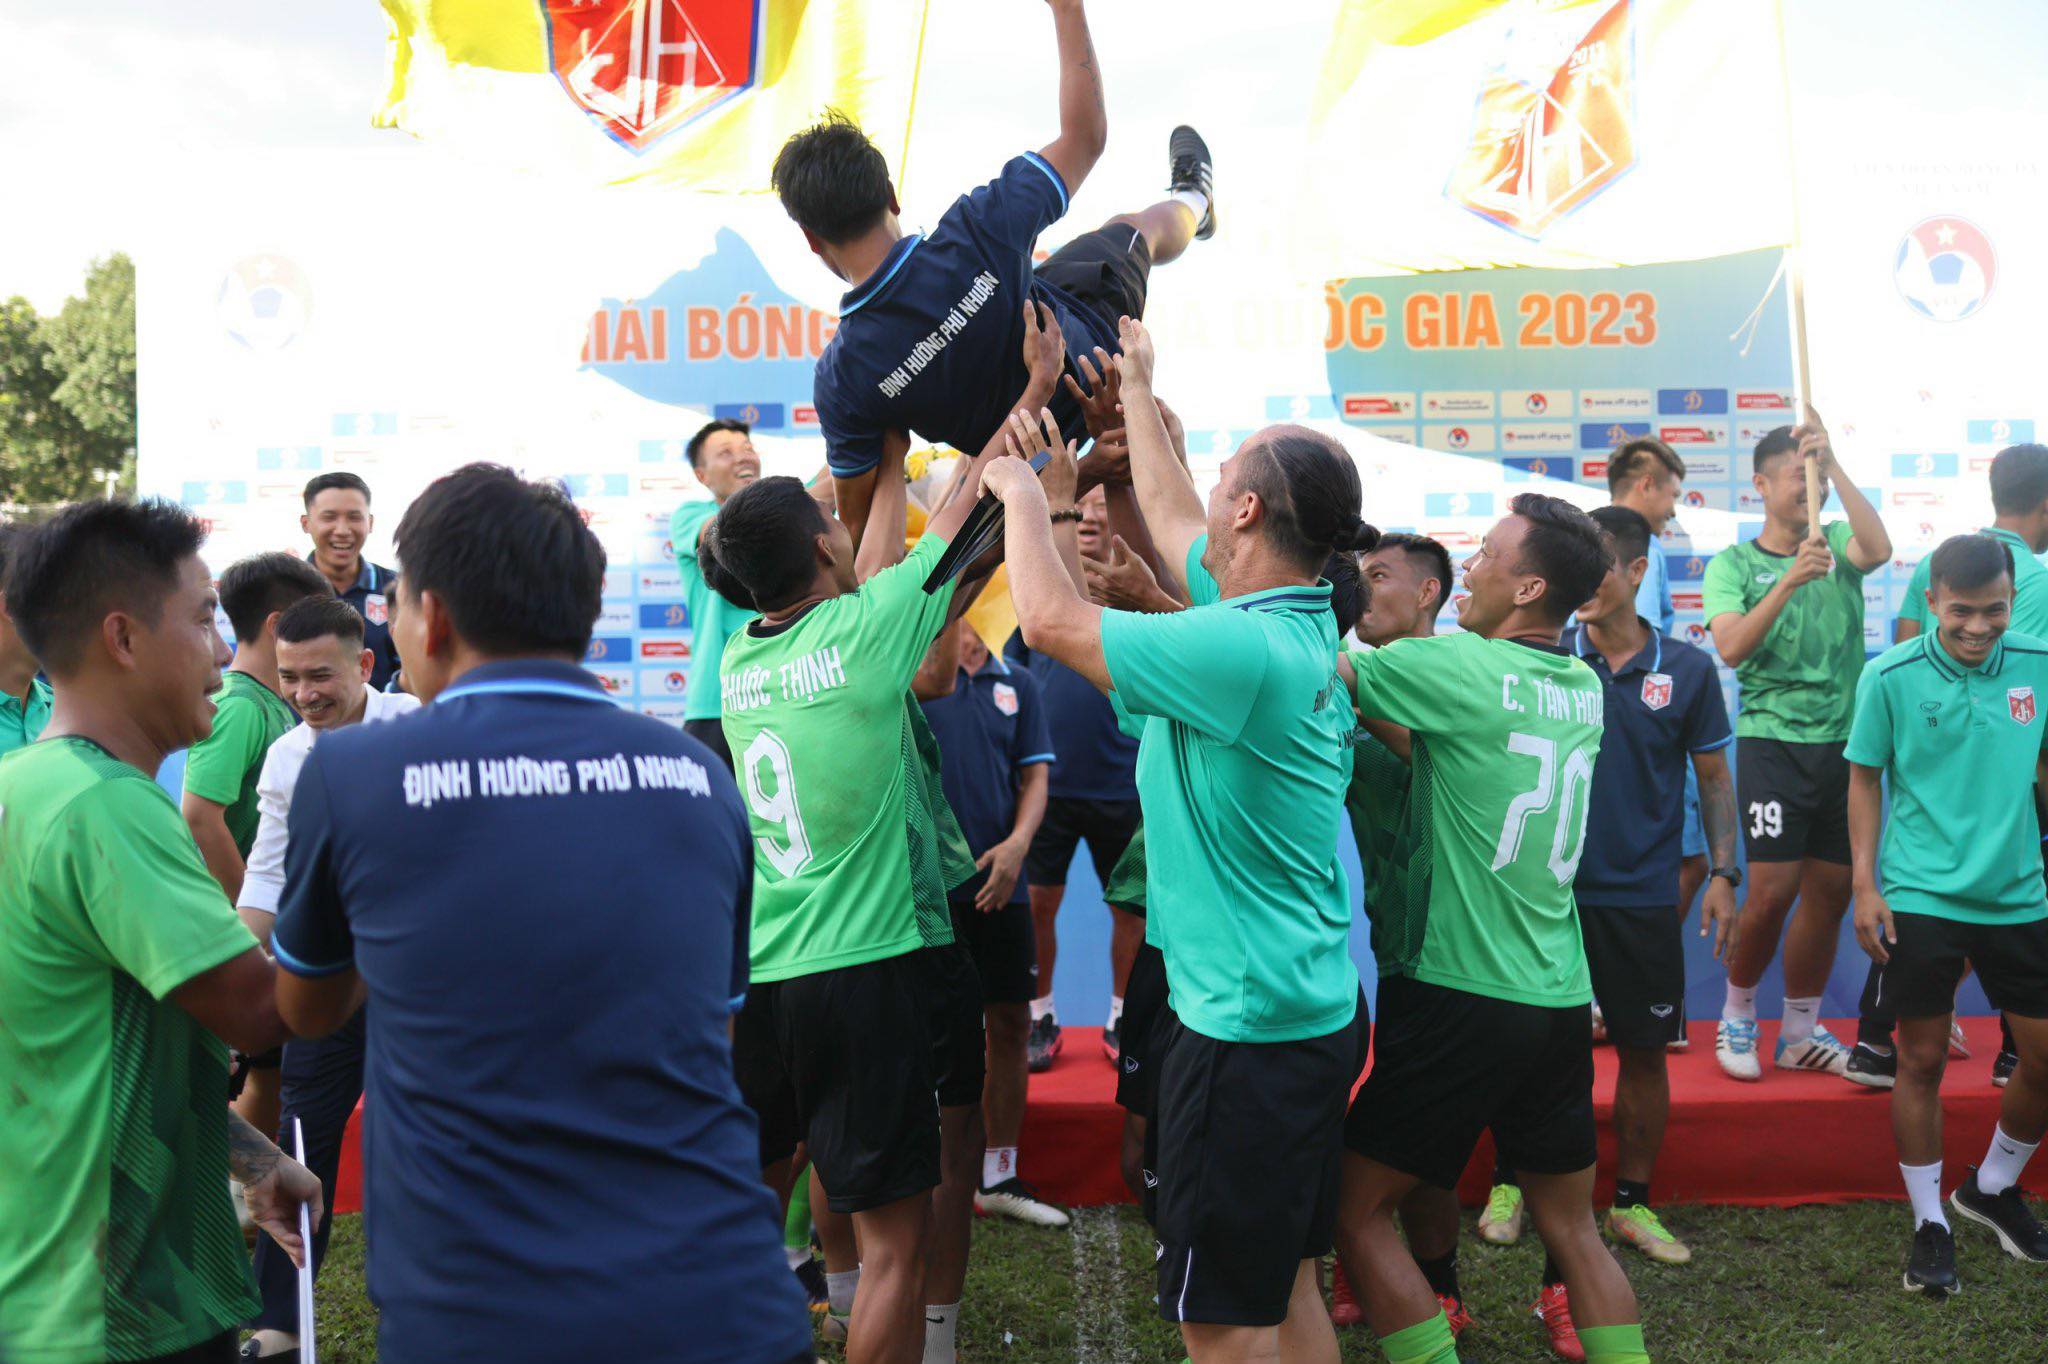 Định Hướng Phú Nhuận ăn mừng lên hạng Nhì 2024